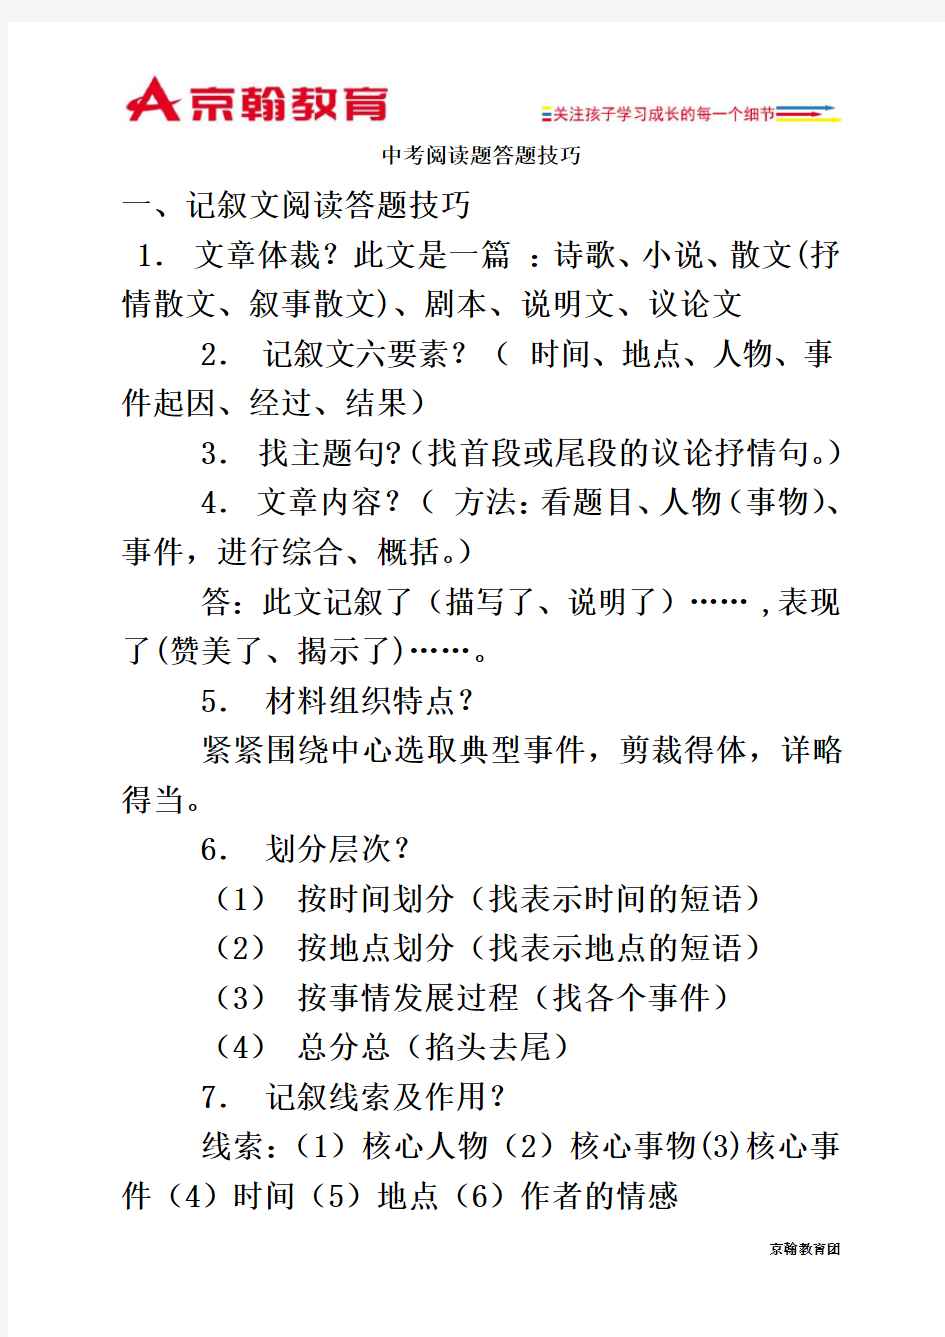 初中语文阅读答题技巧万能公式